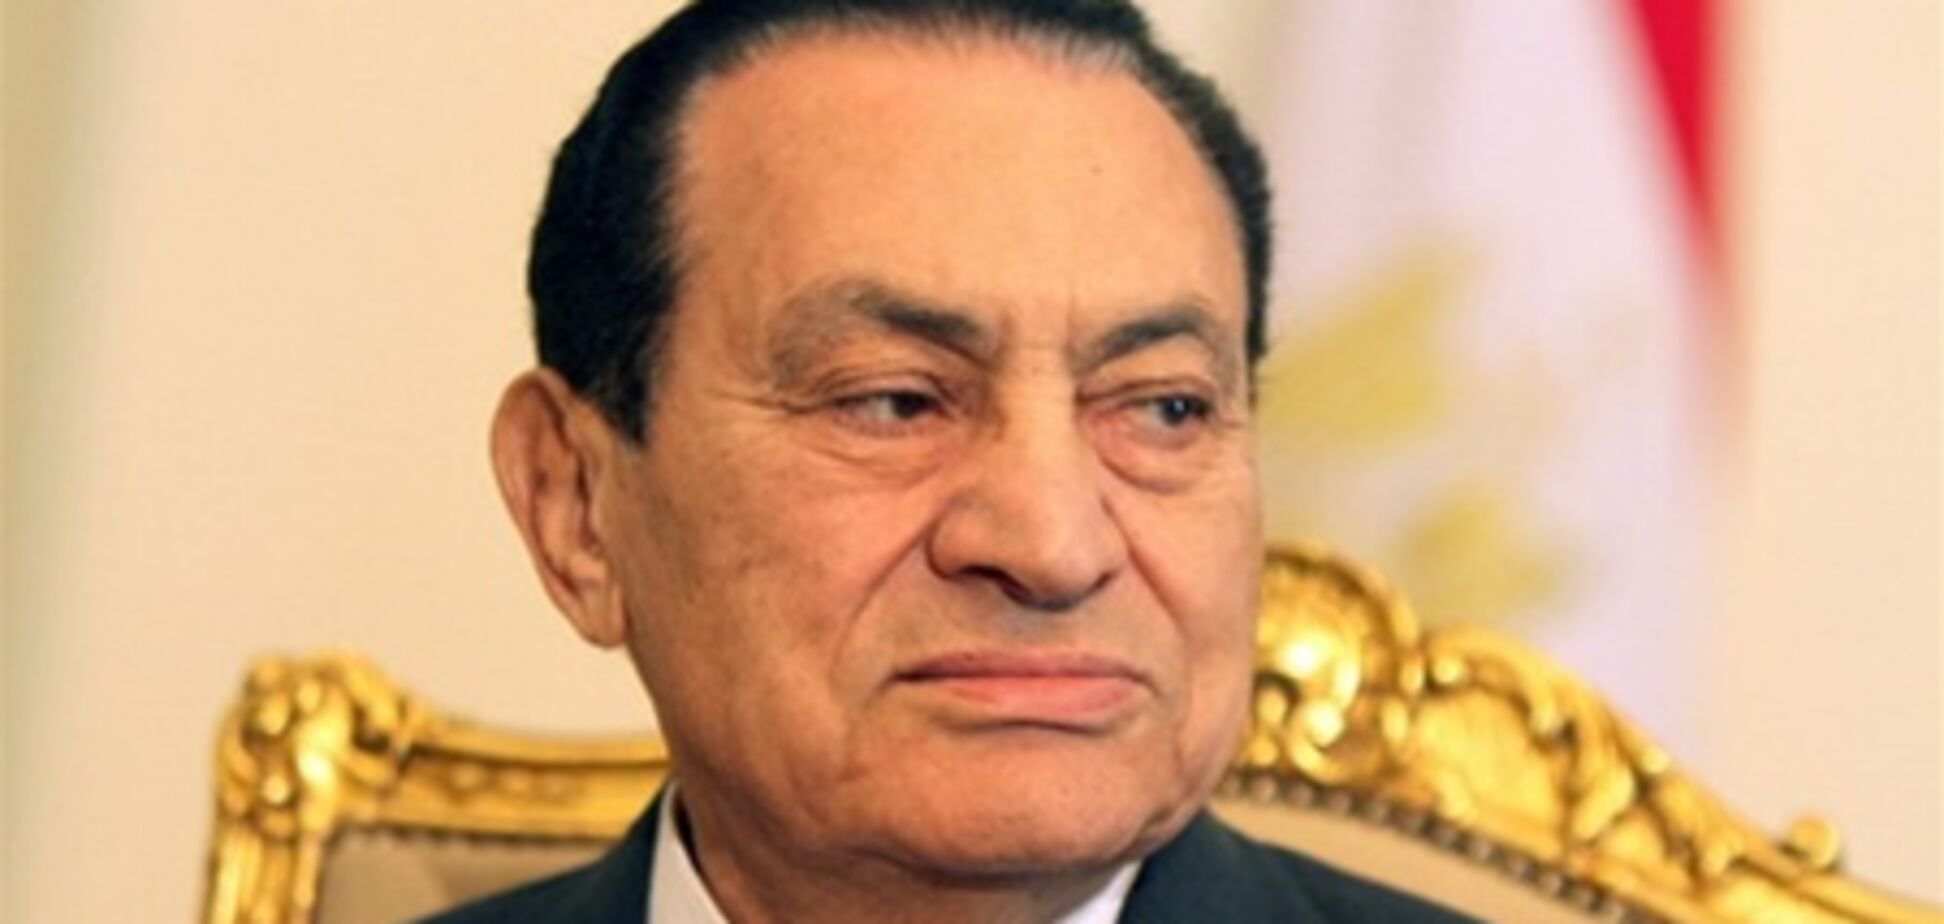 Хосни Мубарак заявил о страшной болезни, чтобы получить амнистию